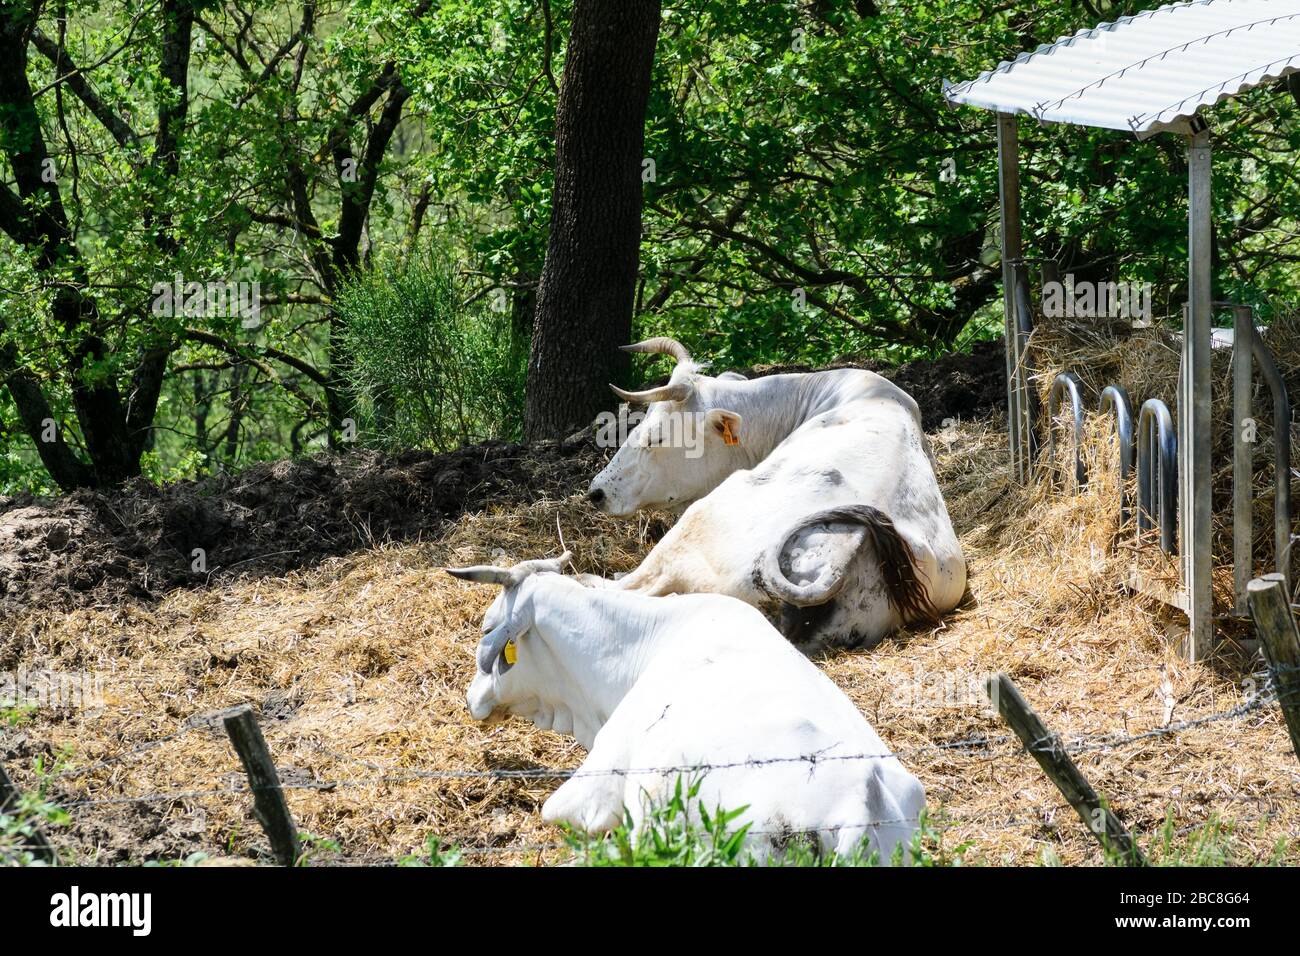 Deux vaches reposent sous l'ombre d'un arbre du côté du coutry de l'Italie centrale en Ombrie. Une belle vue relaxante de la vie quotidienne Banque D'Images